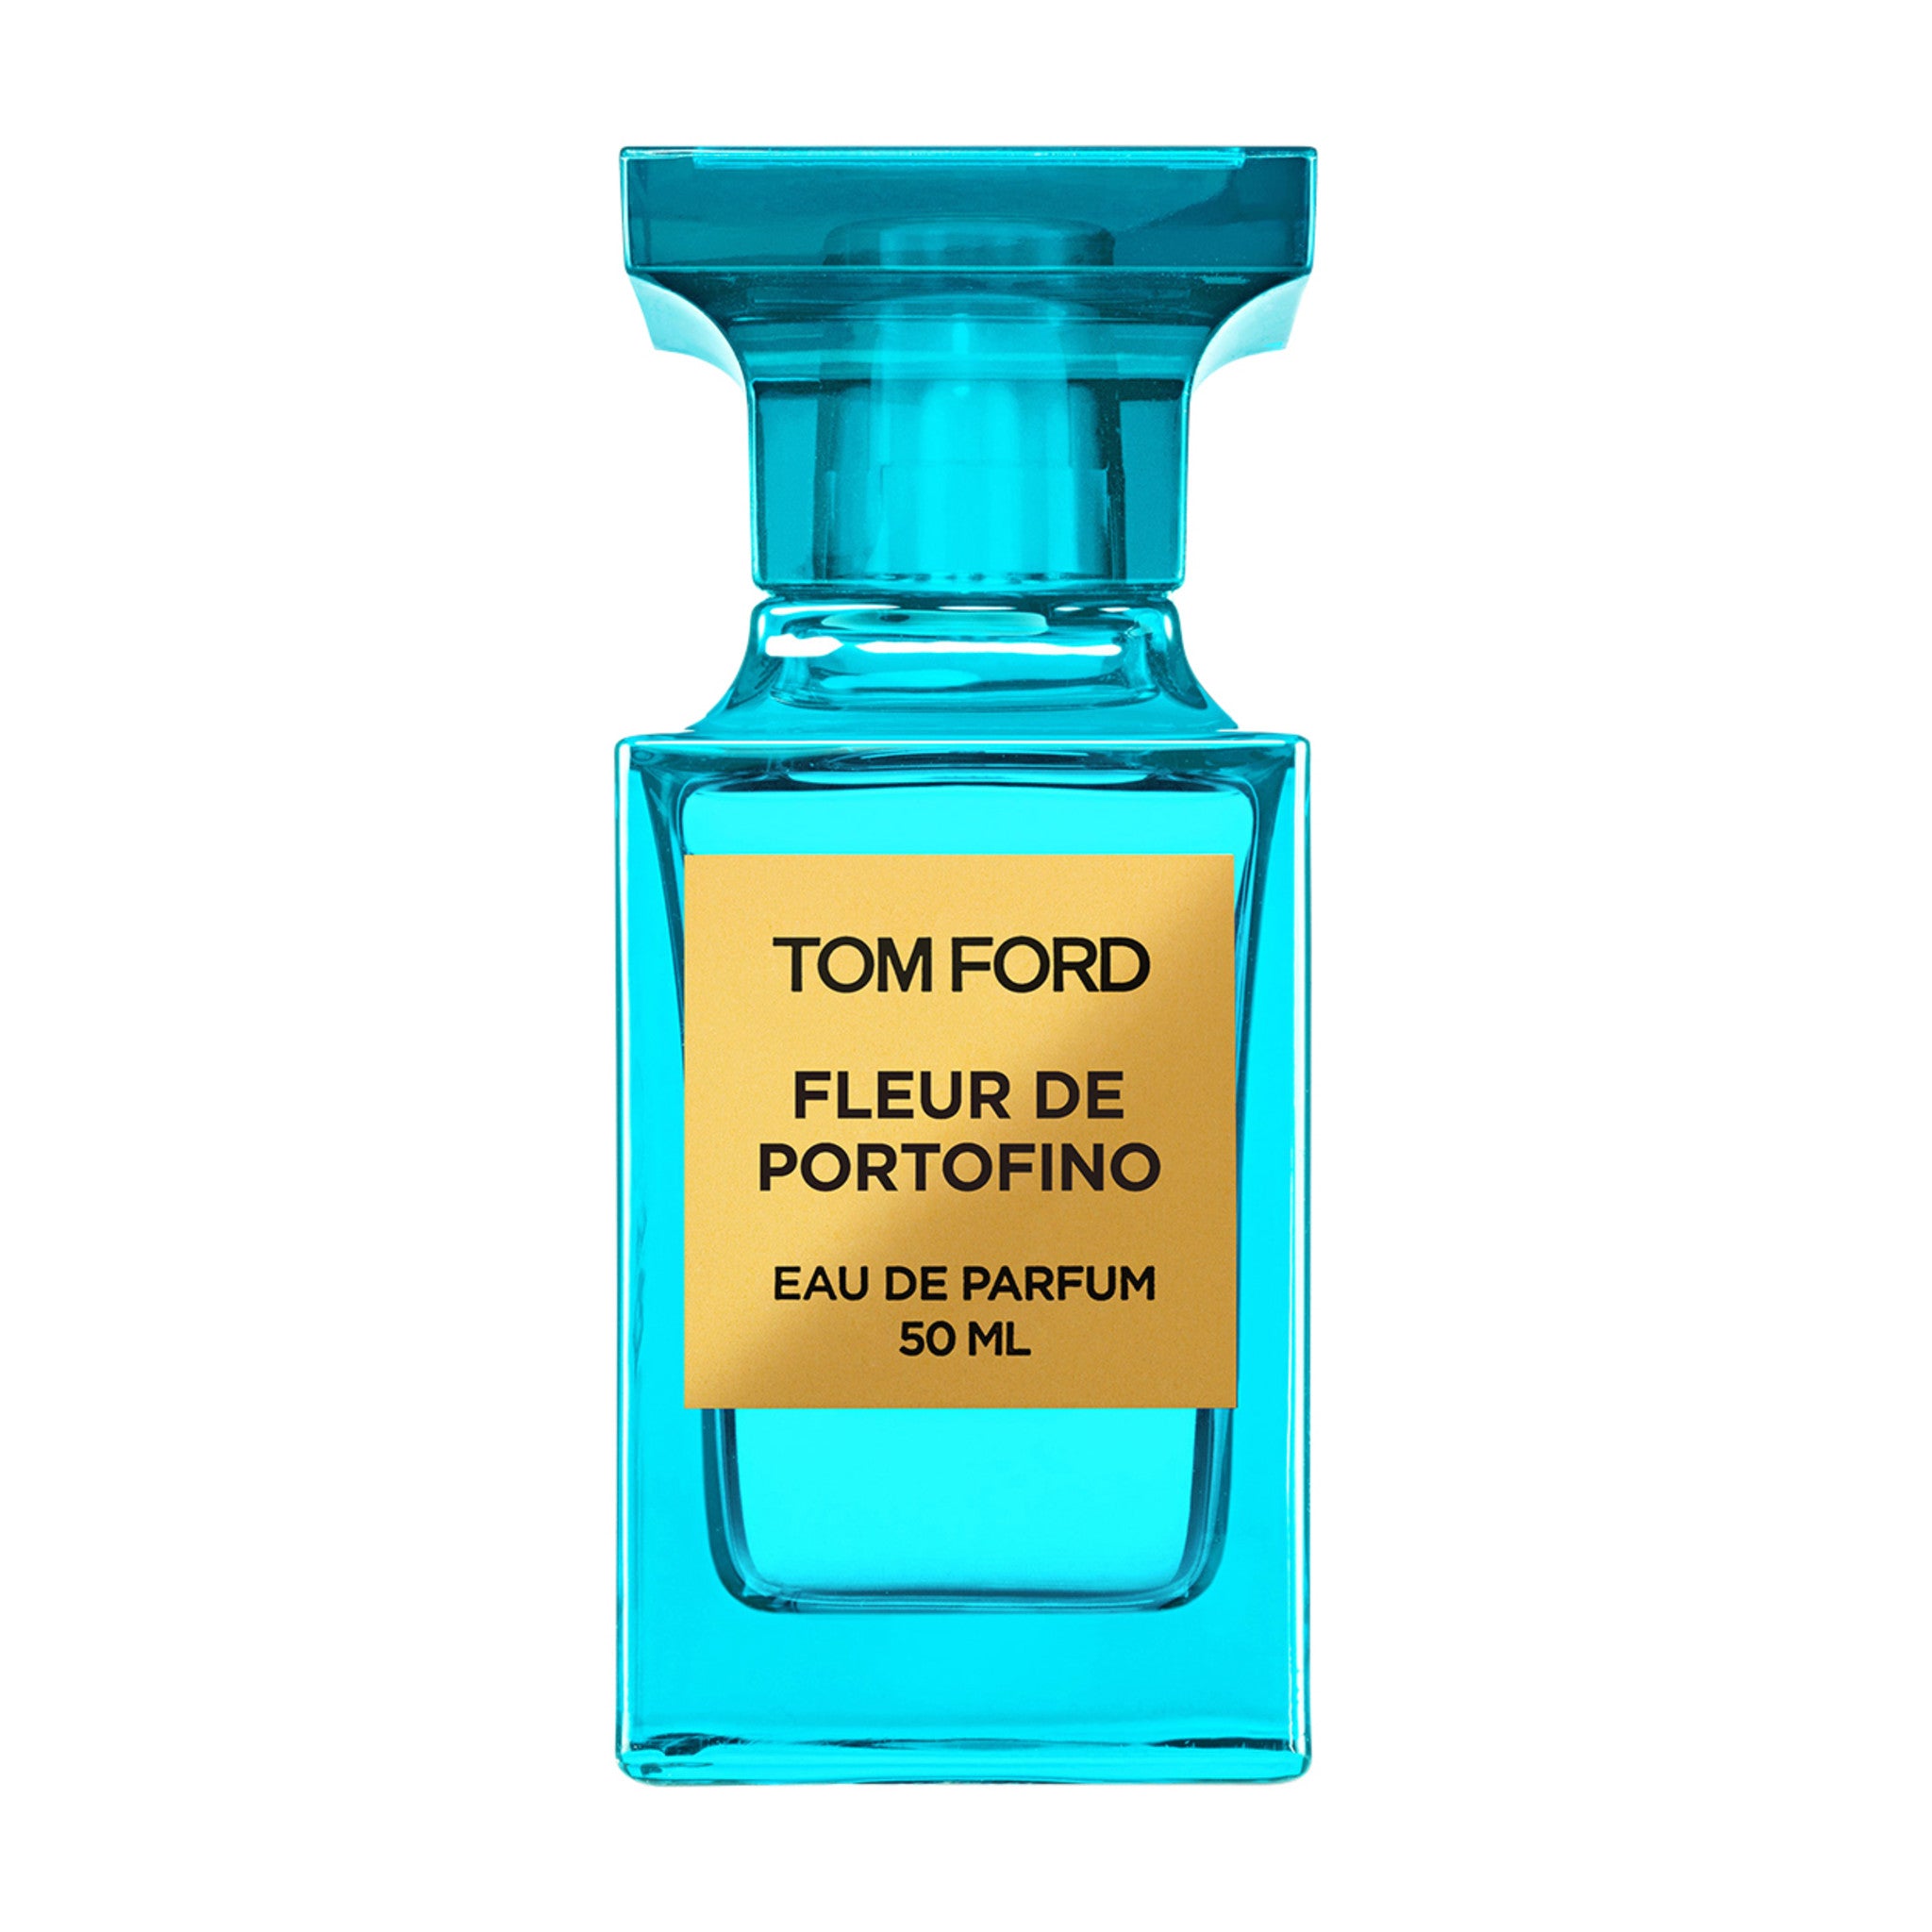 Tom Ford Fleur de Portofino Eau de Parfum Spray main image.